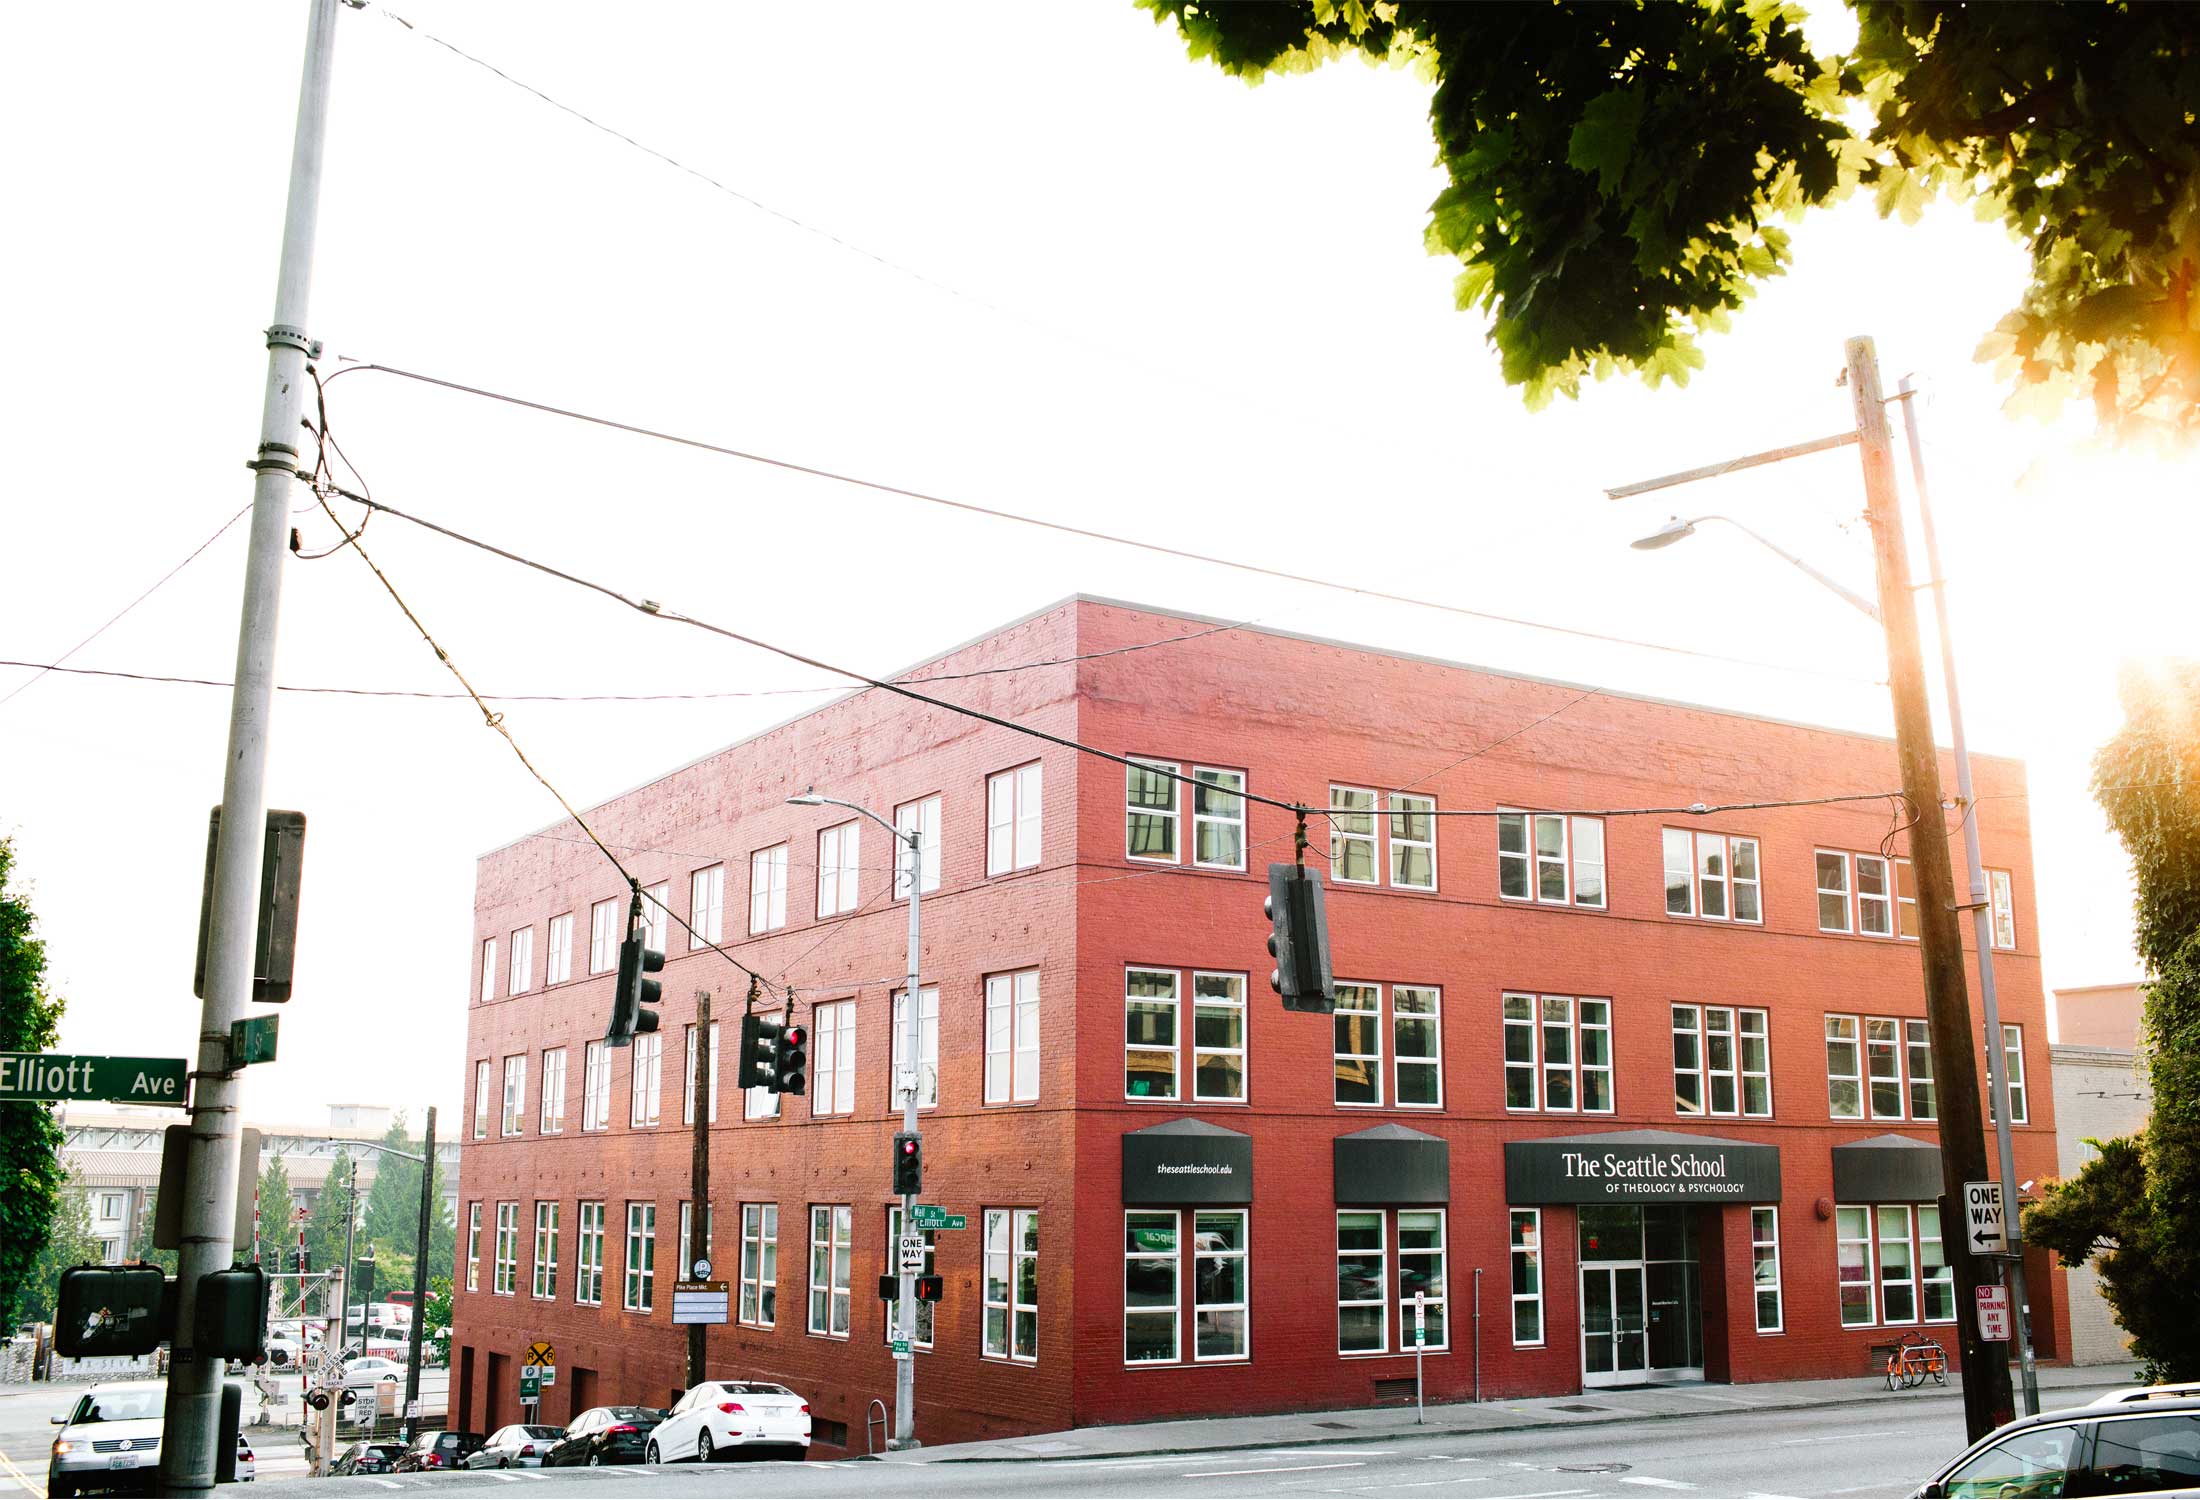 Seattle School building